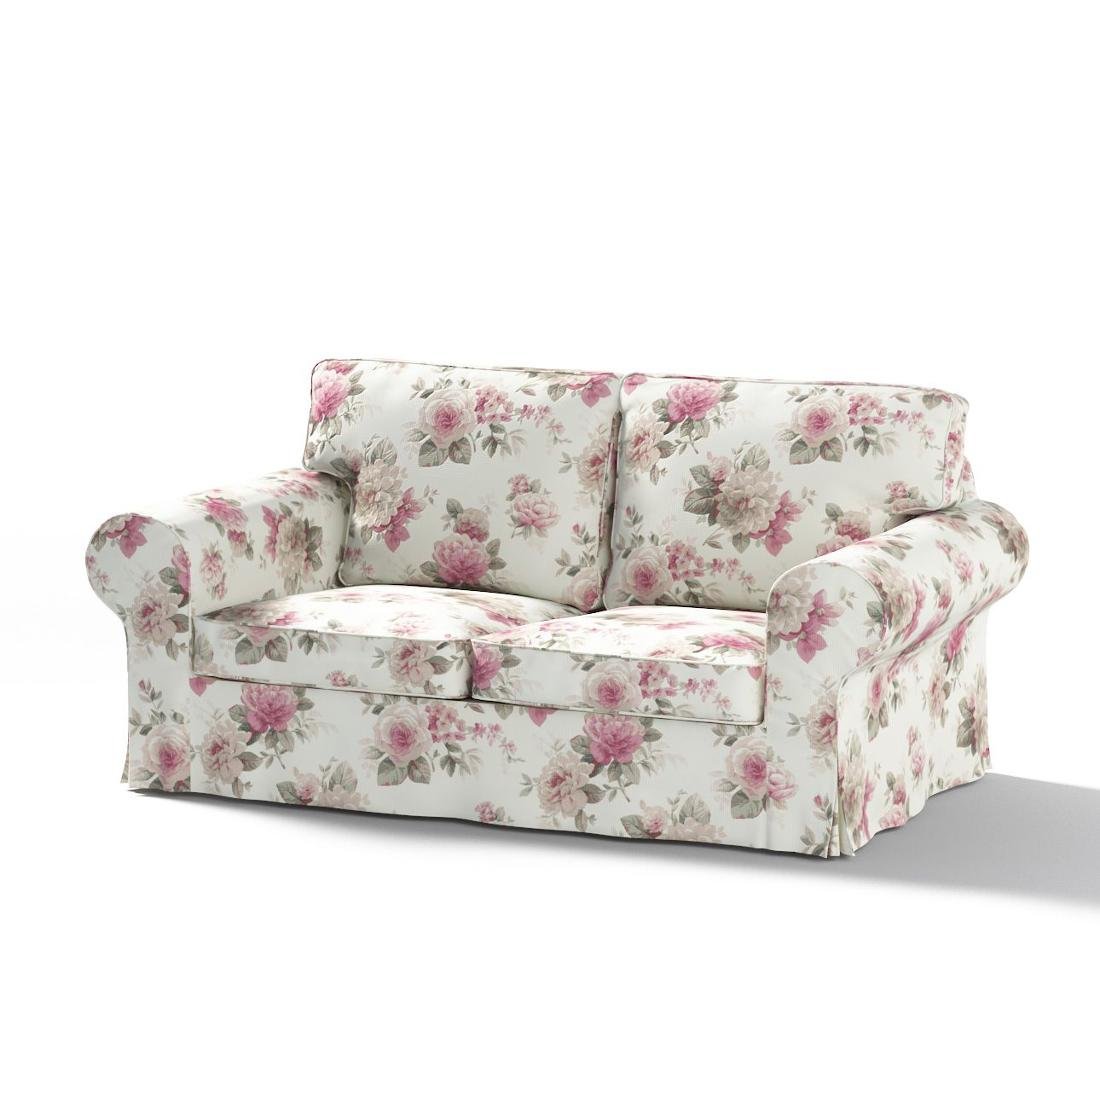 Dekoria Pokrowiec na sofę Ektorp 2-osobową rozkładaną model po 2012 różowo-beżowe róże na kremowym tle 200 x 90 x 73 cm Mirella 1016-141-07